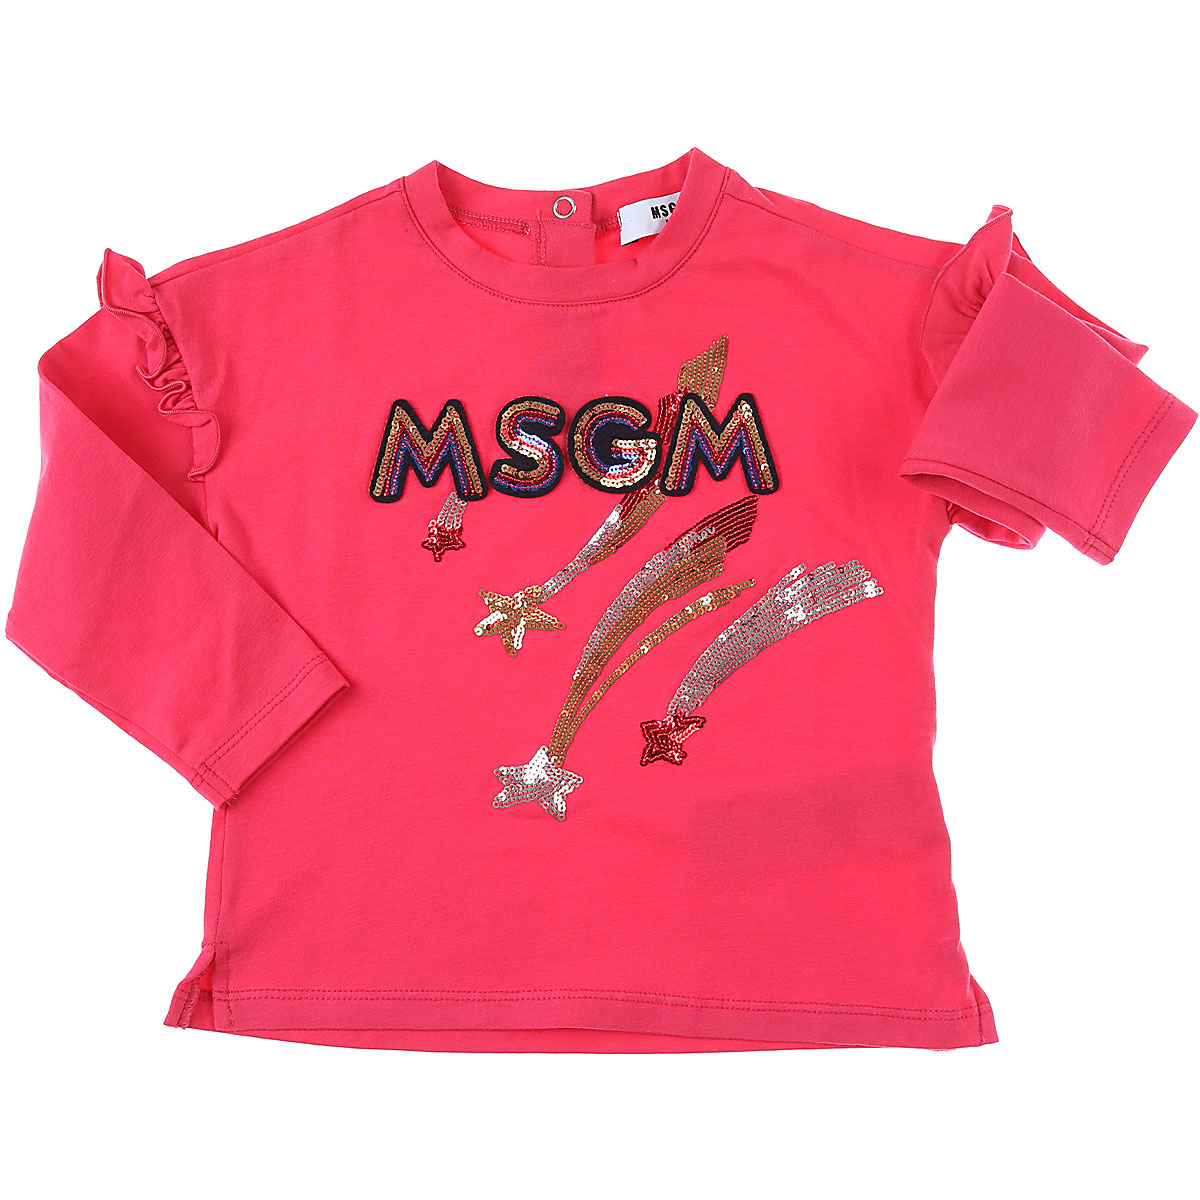 MSGM Baby T-Shirt für Mädchen Günstig im Sale, Fuchsienfarbig, Fuchsie, Baumwolle, 2017, 12M 18M 30M 3Y